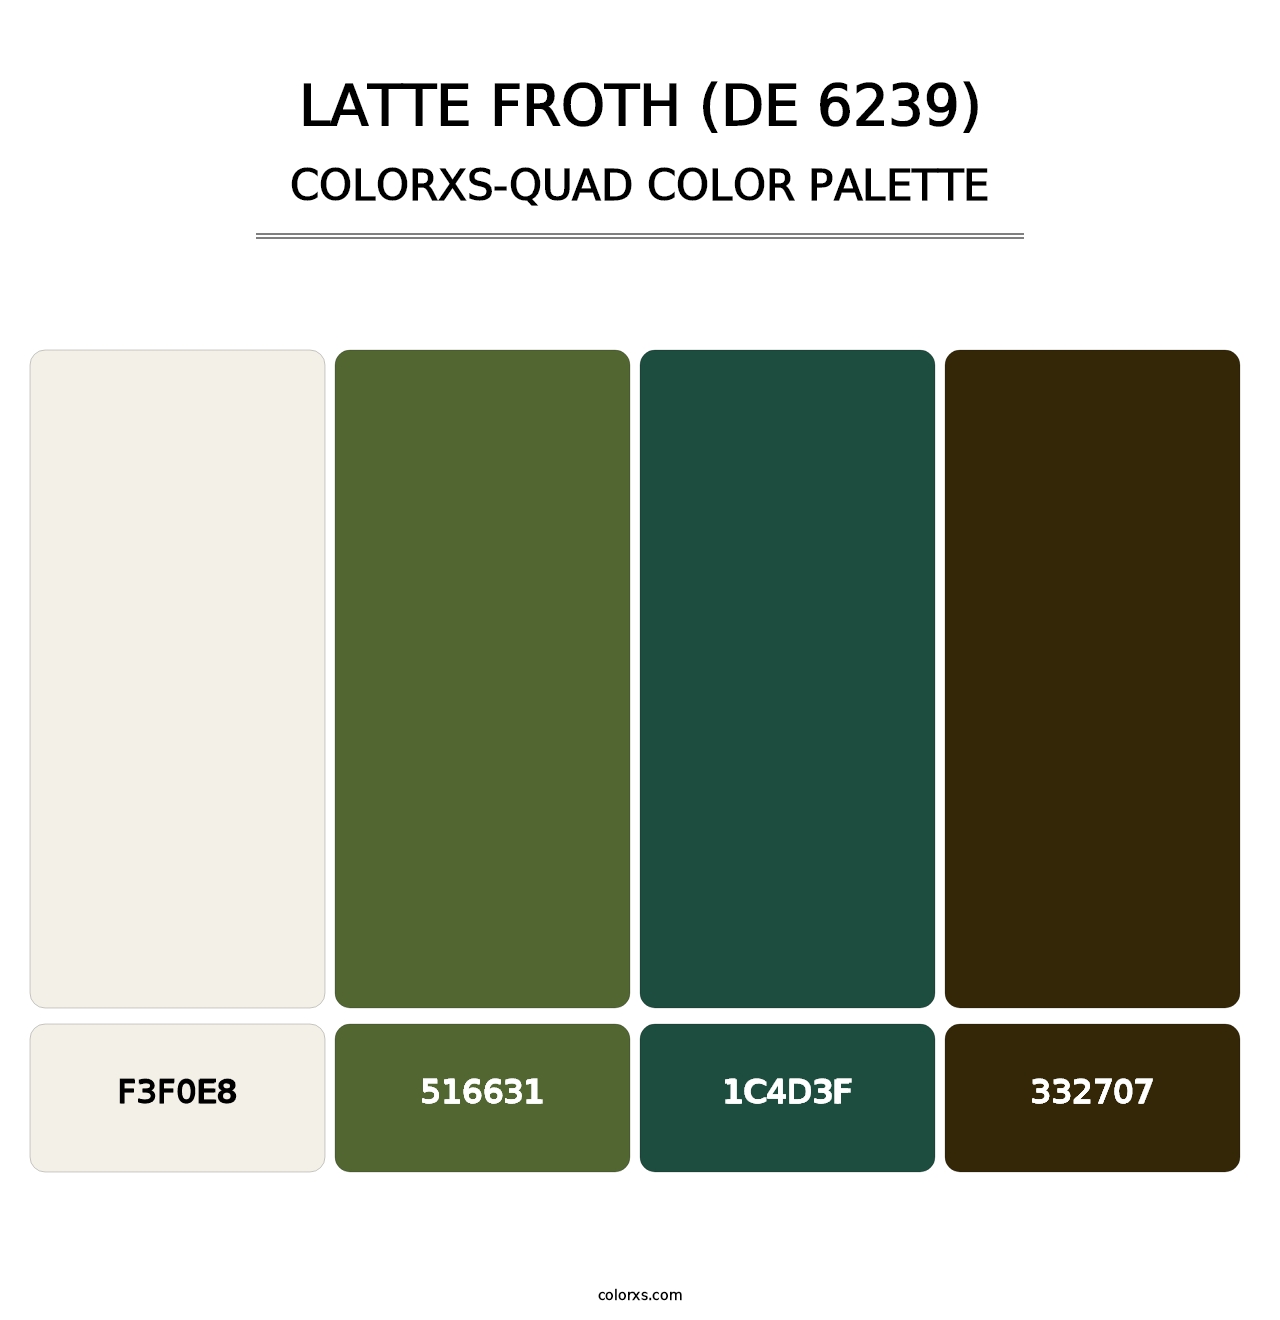 Latte Froth (DE 6239) - Colorxs Quad Palette